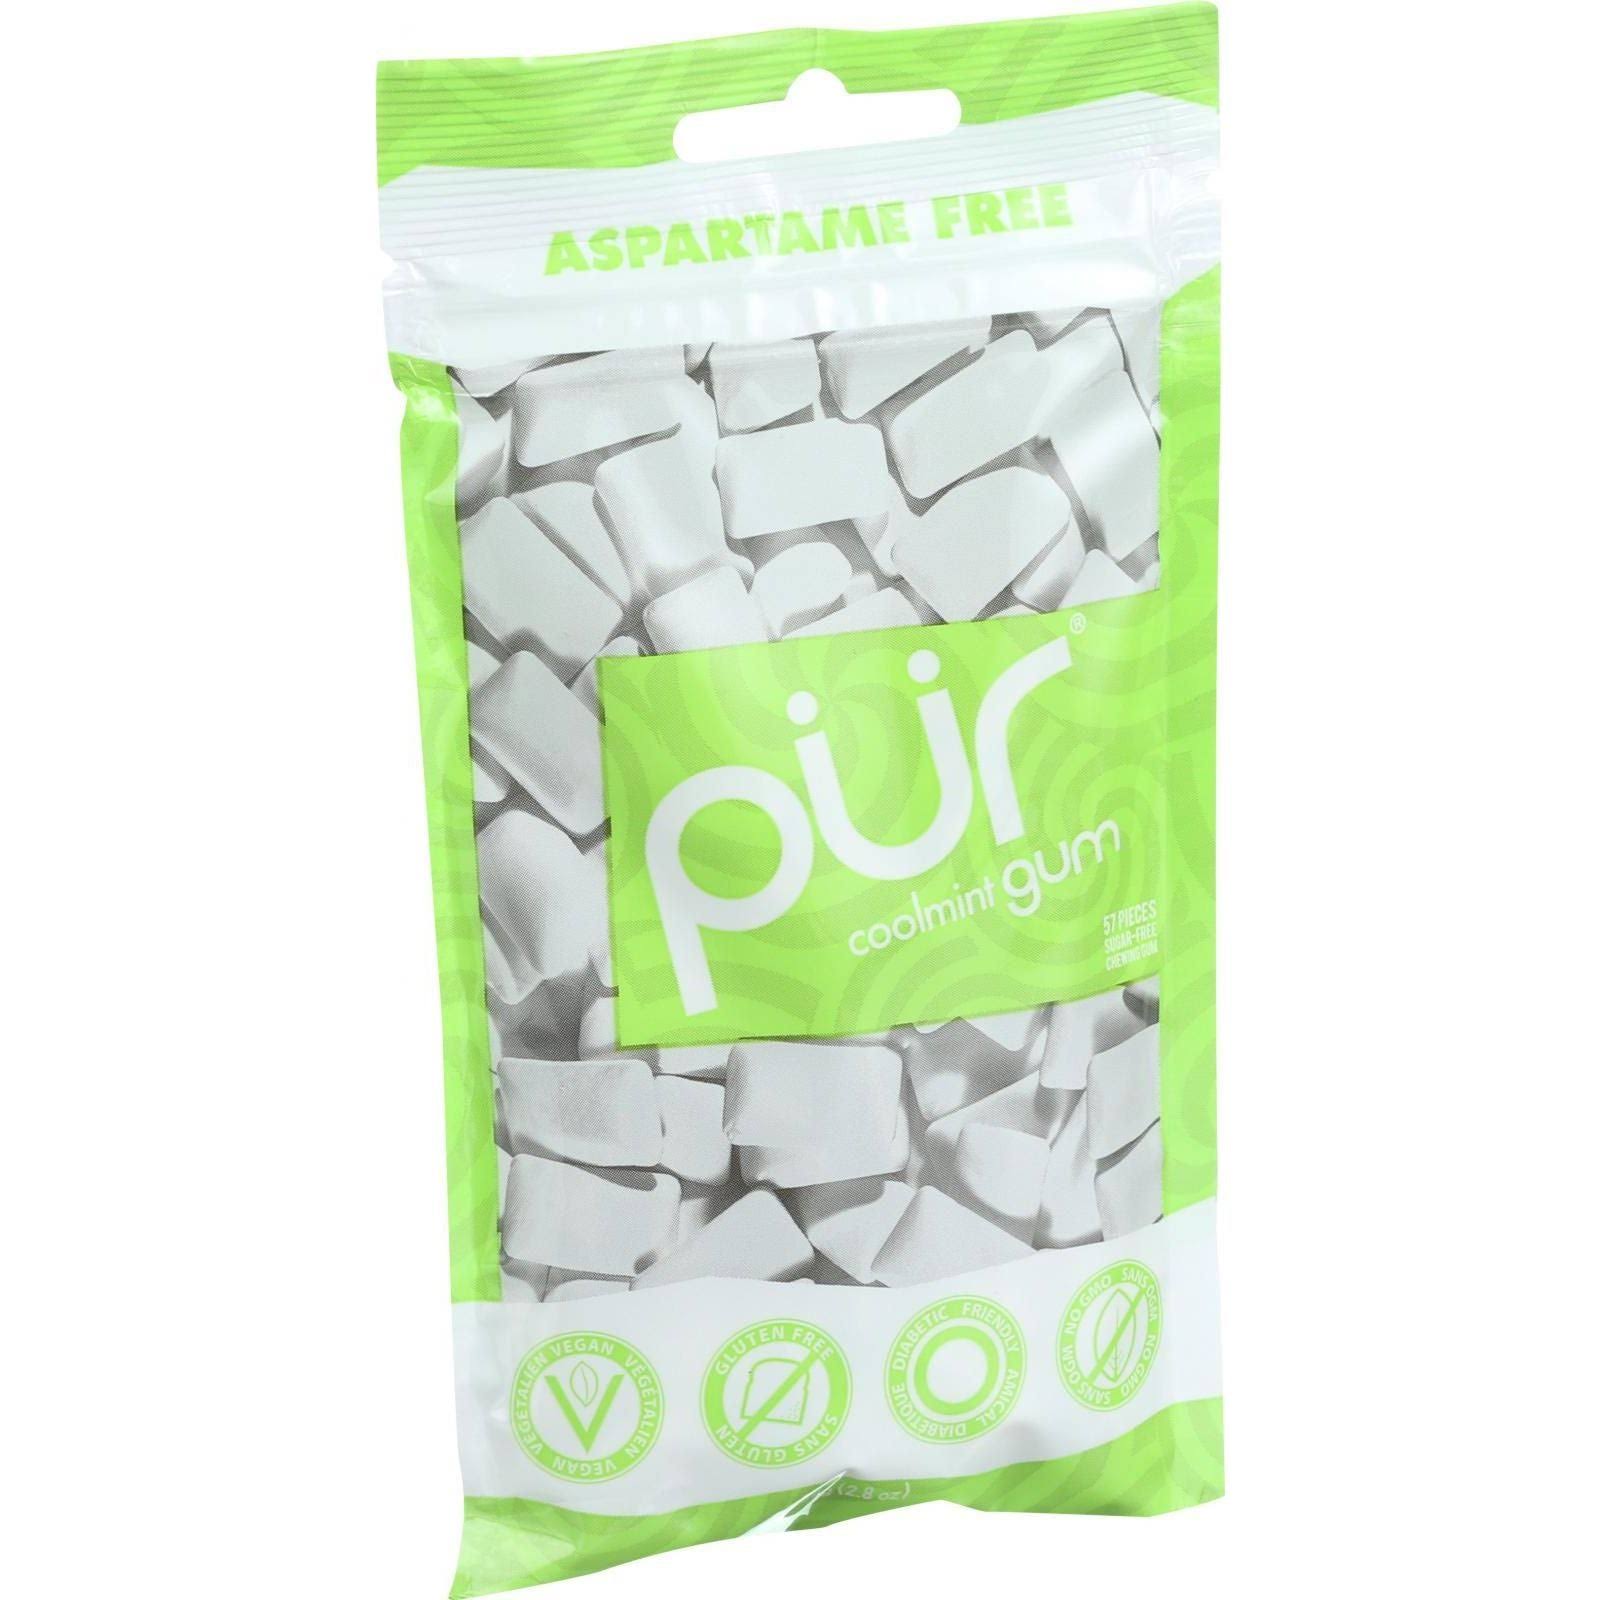 Pur Aspartame Free Gum - Cool Mint